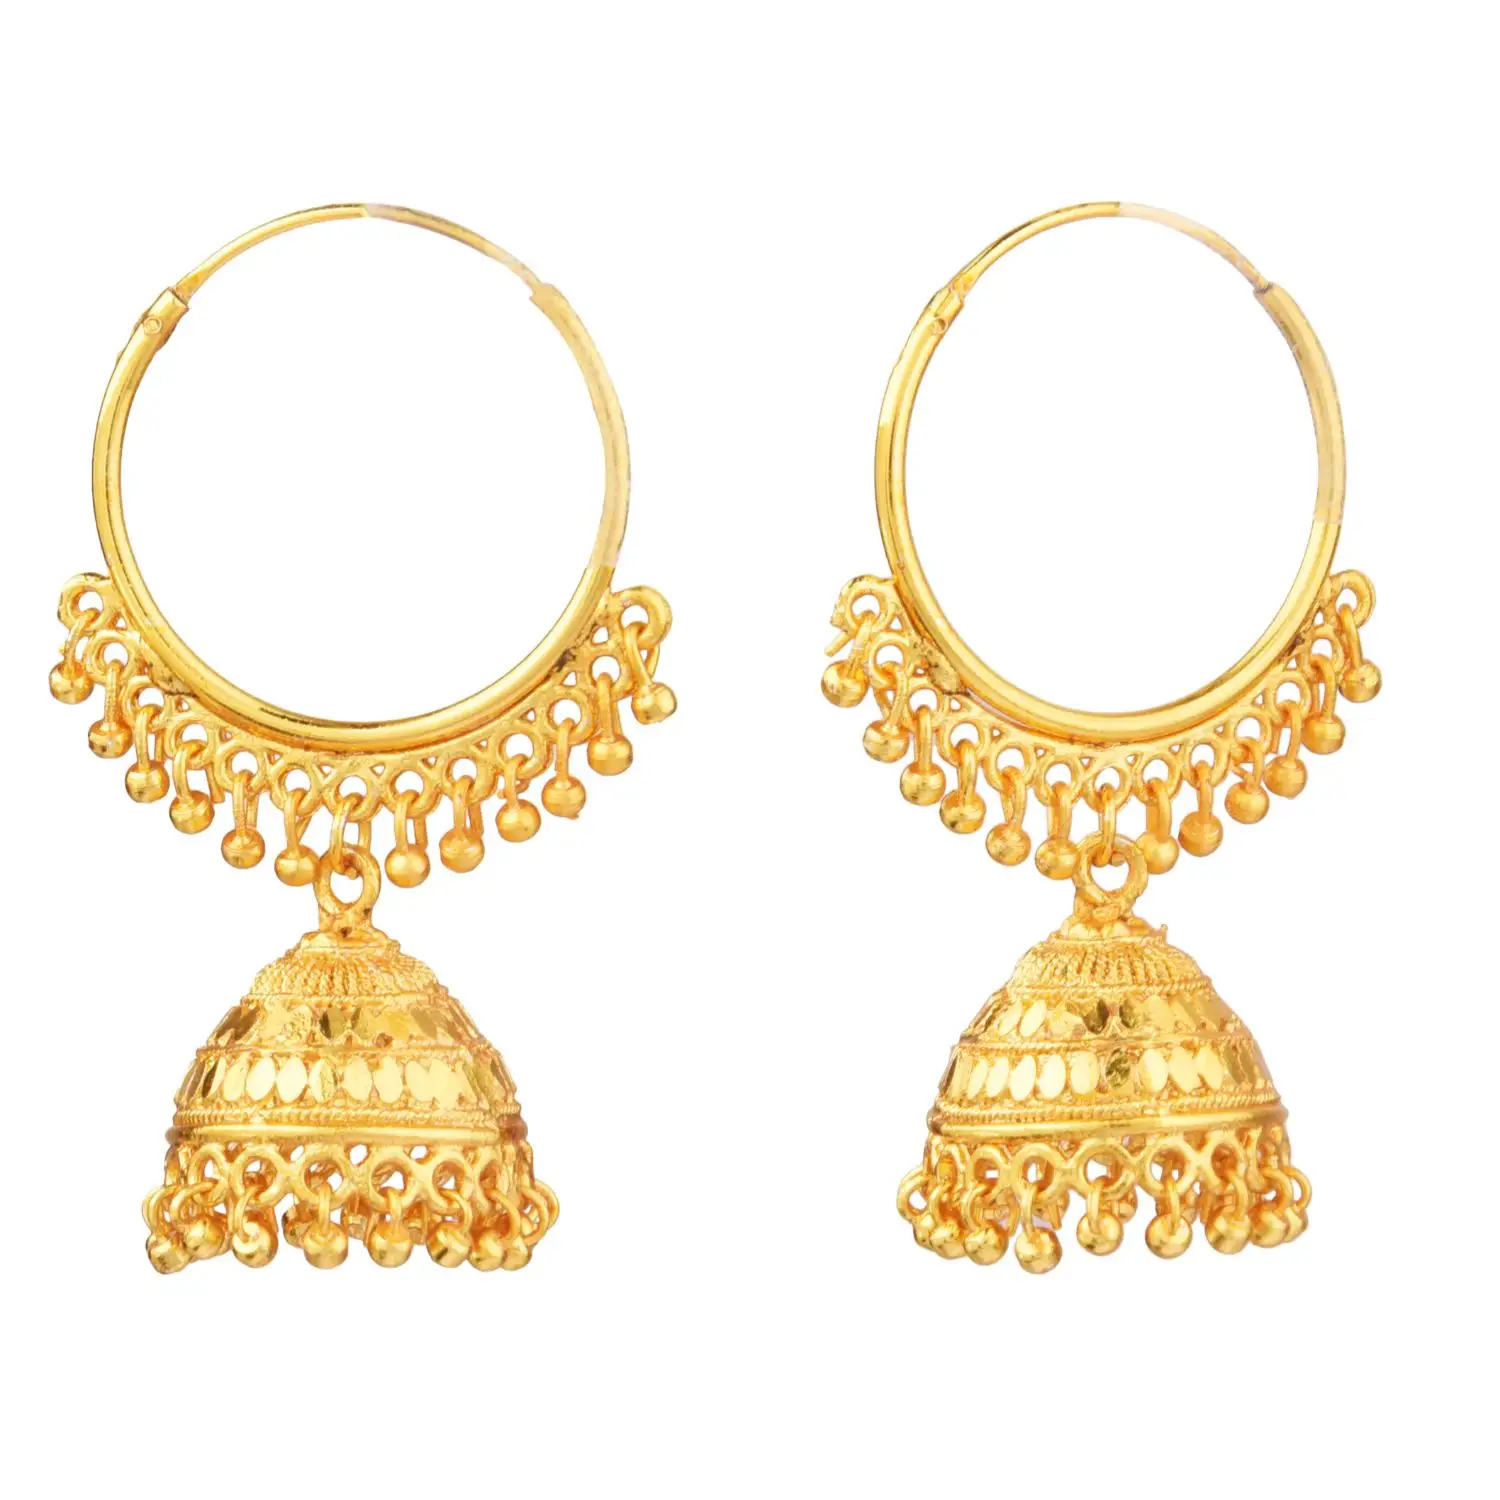 Conjunto de brincos pendurados estilo Jhumka Jhumki para mulheres, joia étnica indiana banhada a ouro, joalheria indiana